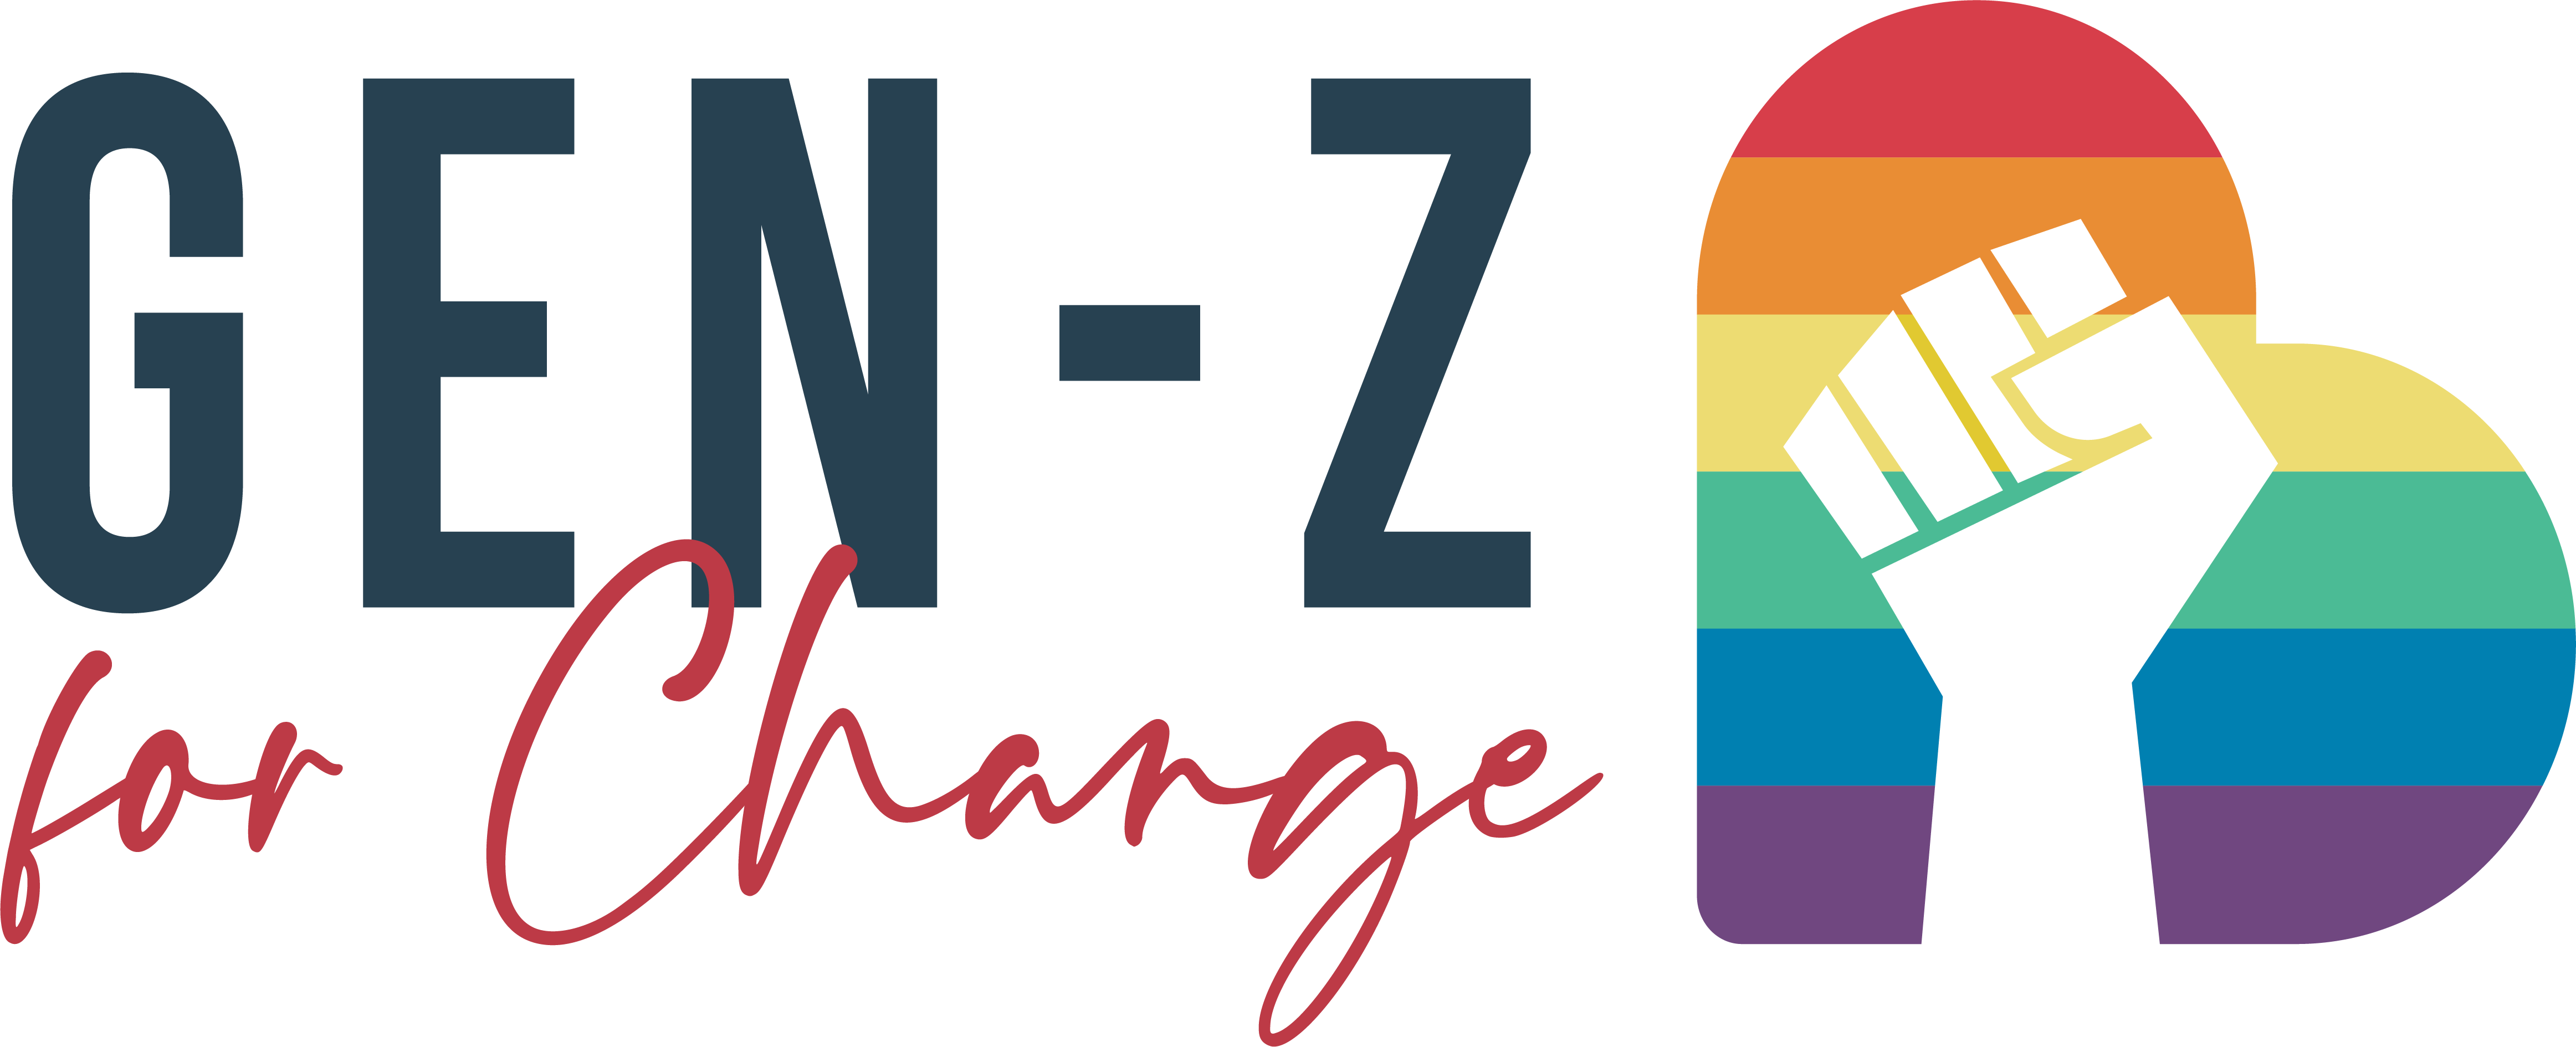 Gen-Z for Change